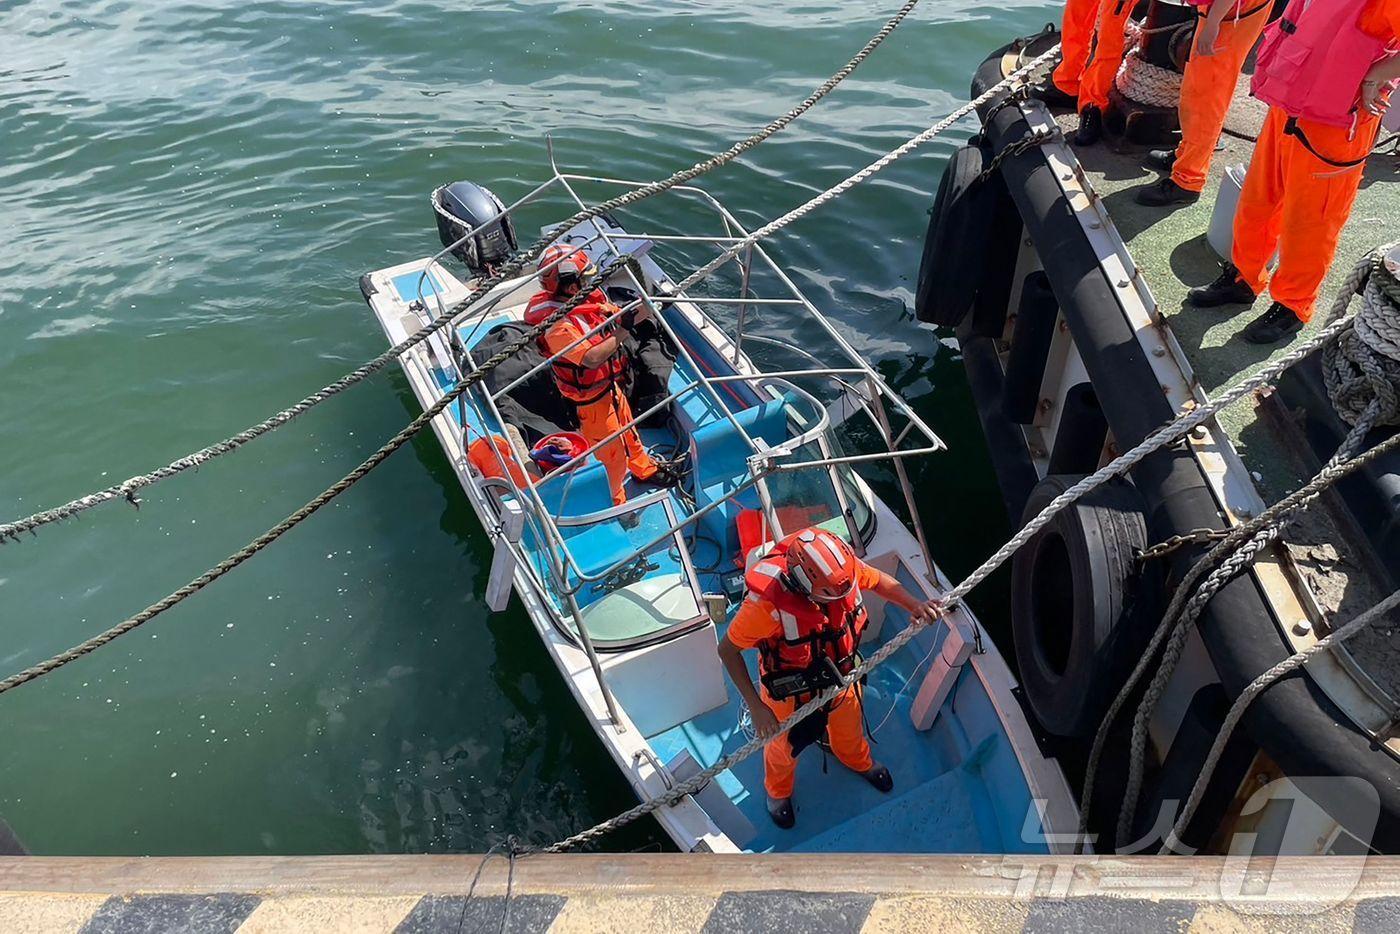 대만 단수이 강에서 잡힌 중국인 남성 소유의 보트에 대만 해안경비대가 탄 모습. 6월 9일 중국인이 몰던 배는 강에서 다른 선박과 충돌했고, 출동한 해안경비대에 이 중국인은 체포됐다.ⓒ AFP=뉴스1